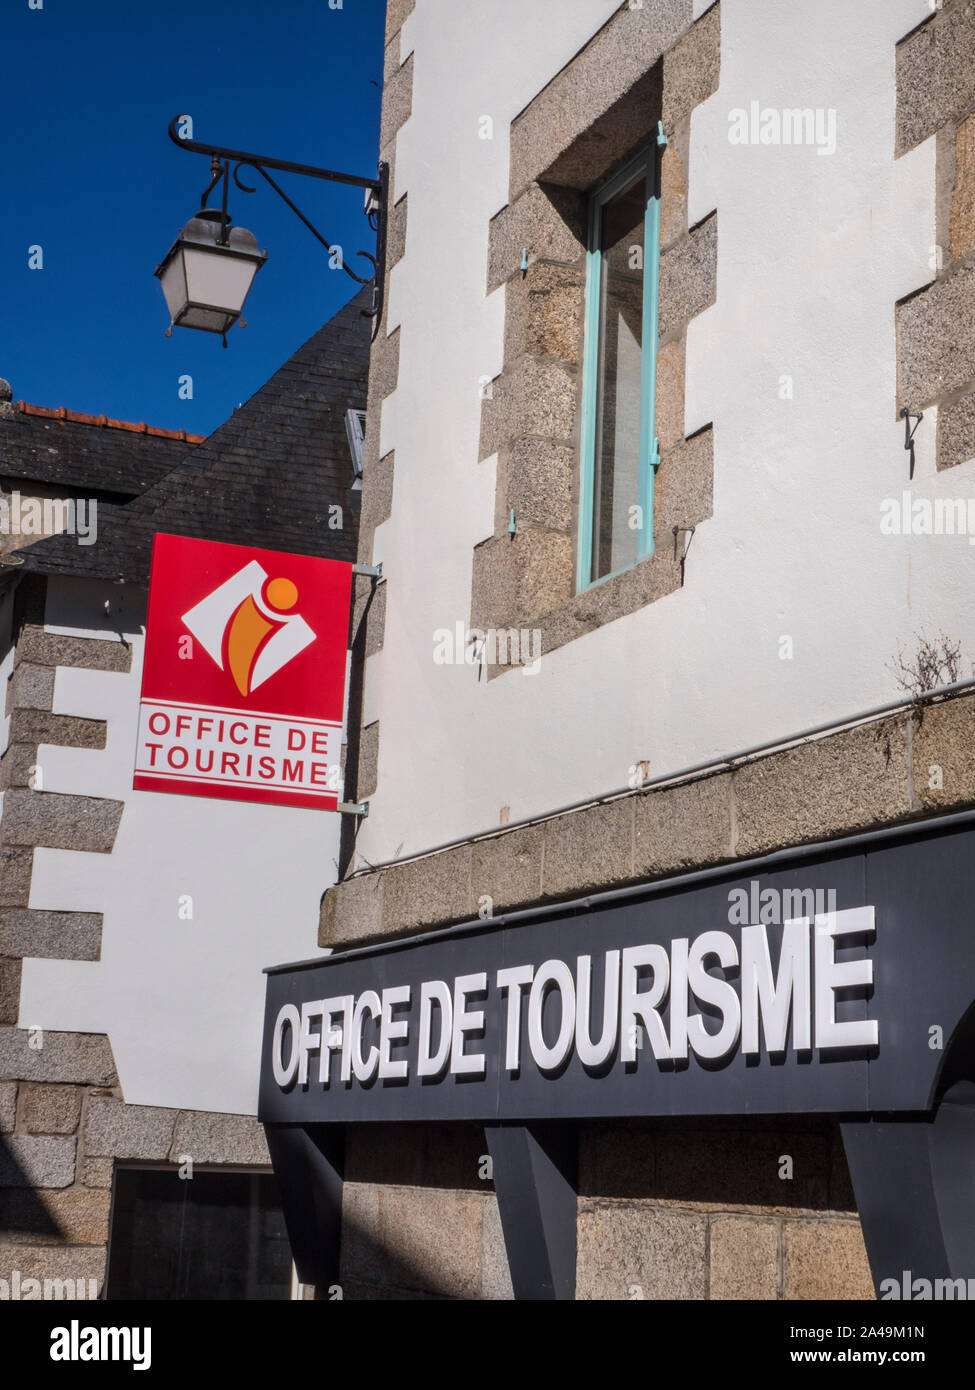 Office de Tourisme français (Office de Tourisme) extérieur à Pont-Aven avec le dernier logo marque Pont-Aven Bretagne Finistère France Banque D'Images